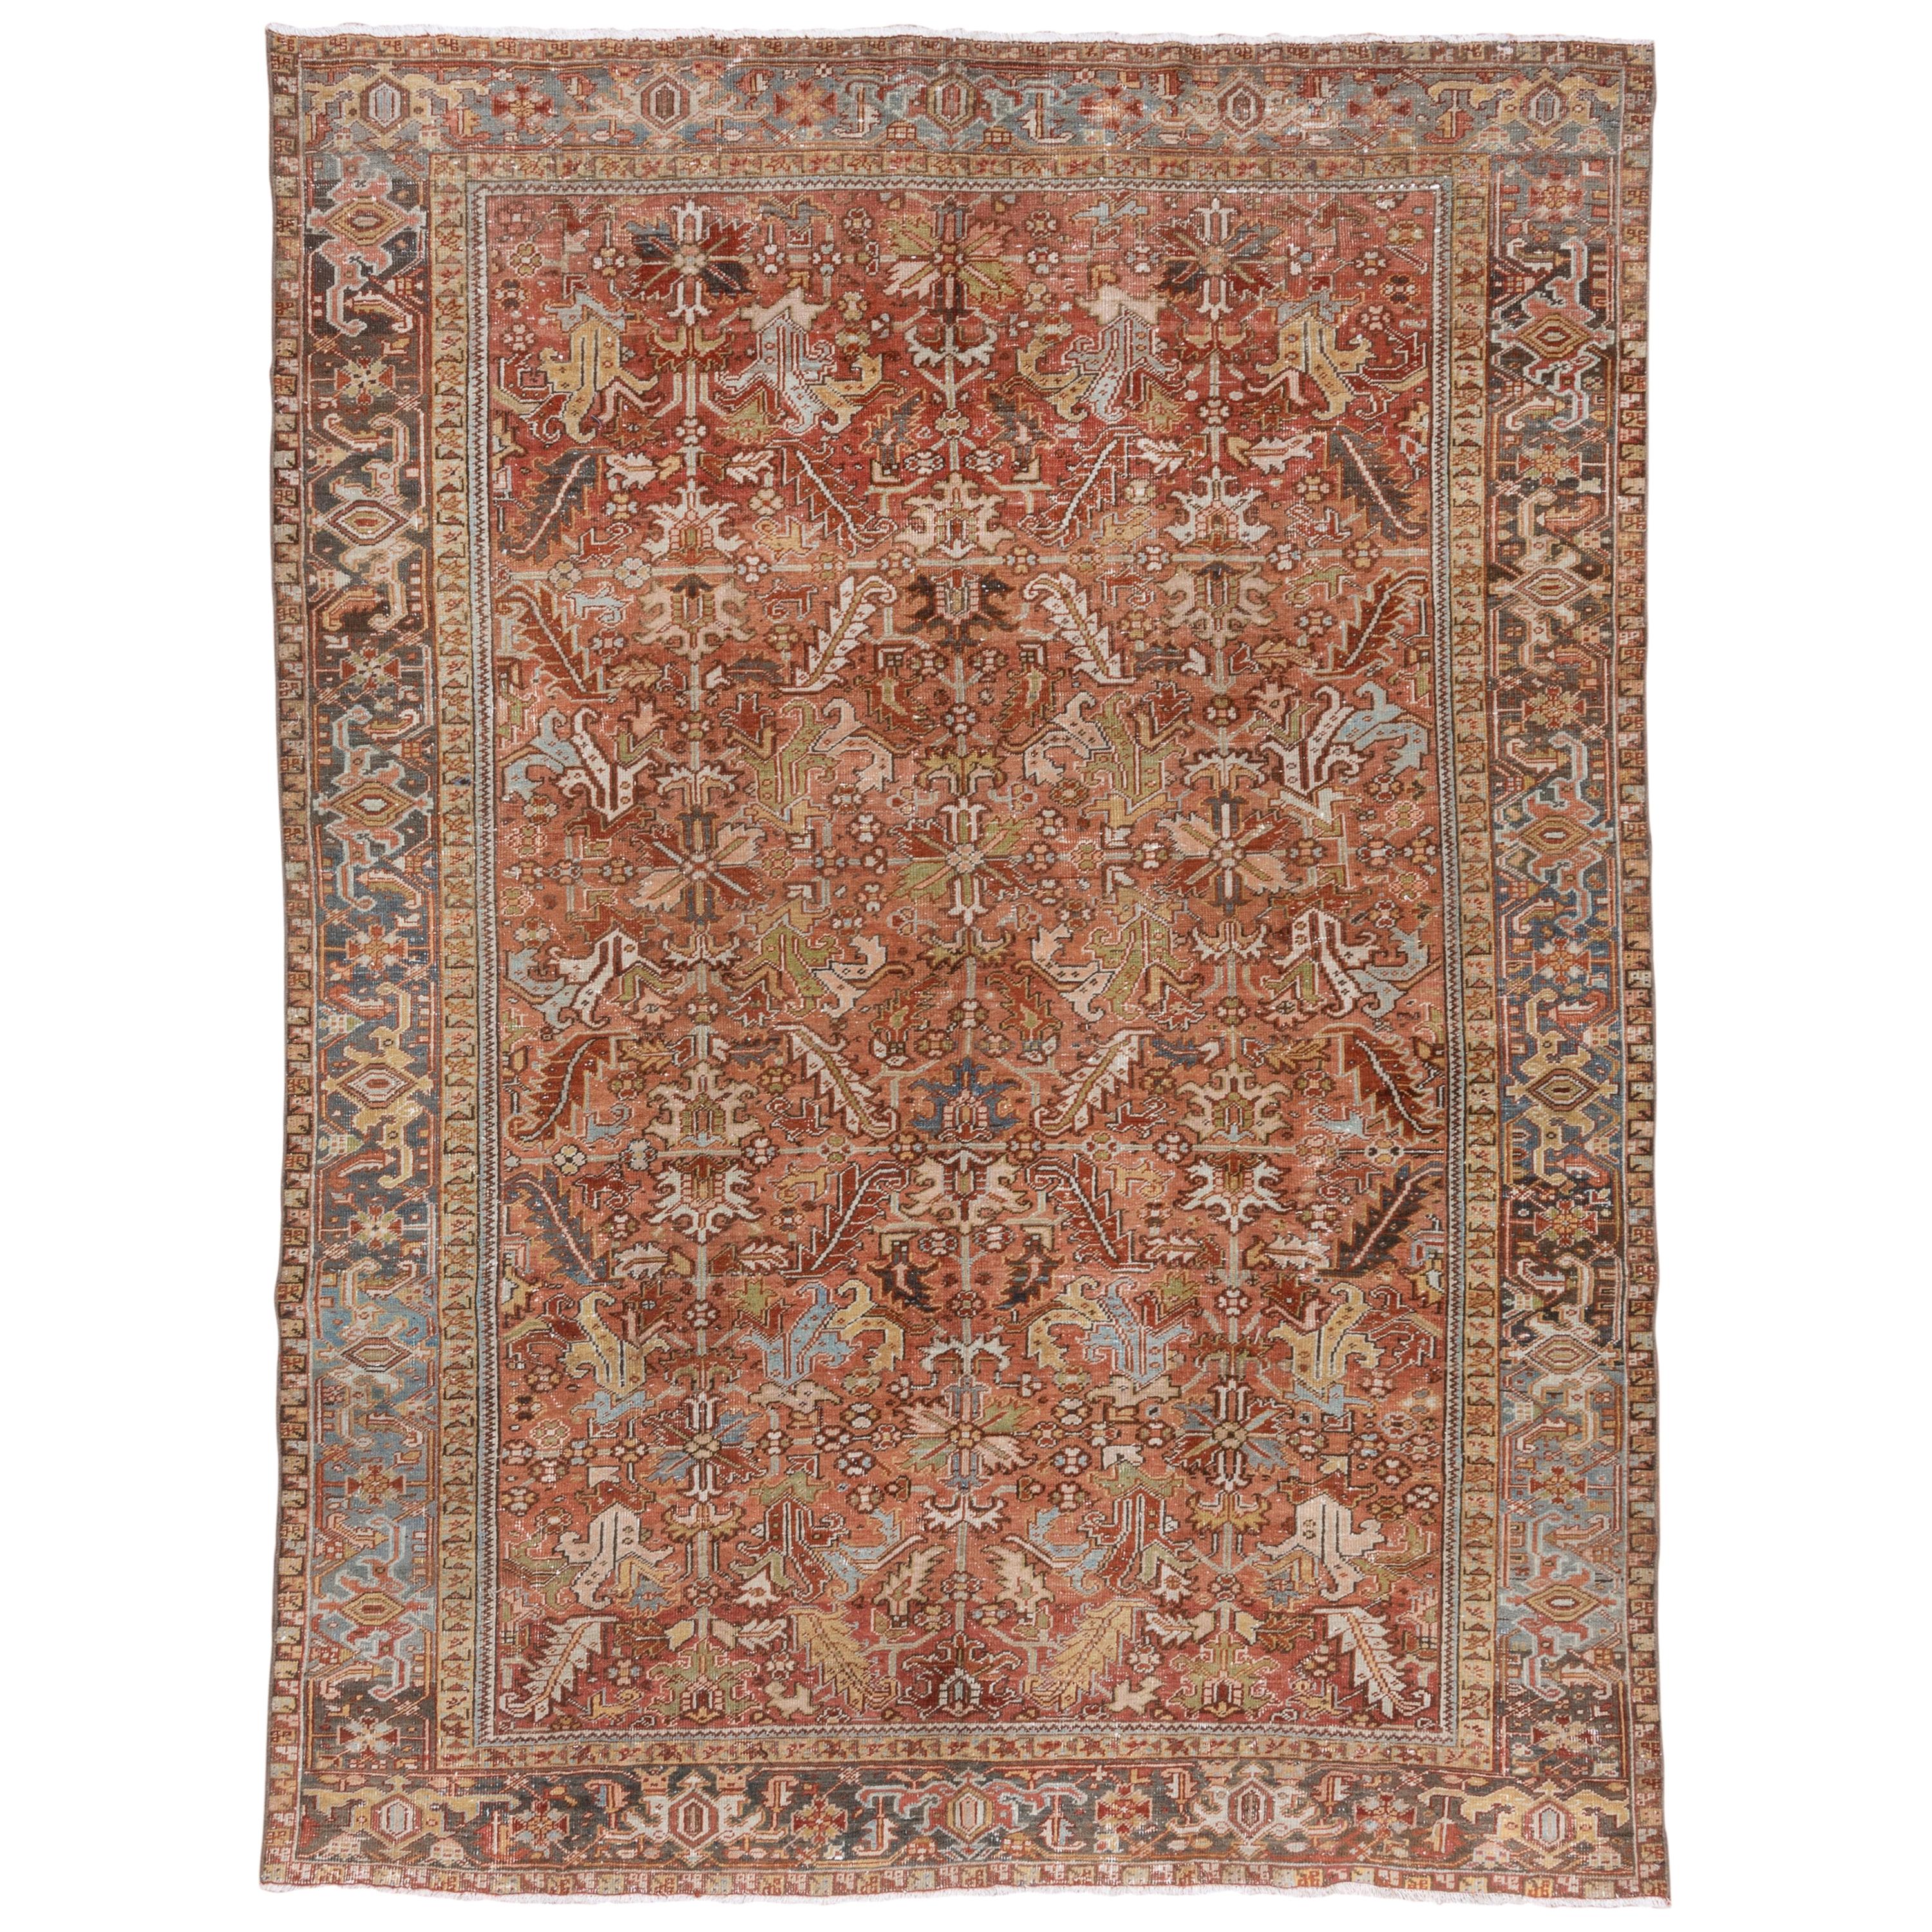 Antique Rustic Persian Heriz Carpet, circa 1920s